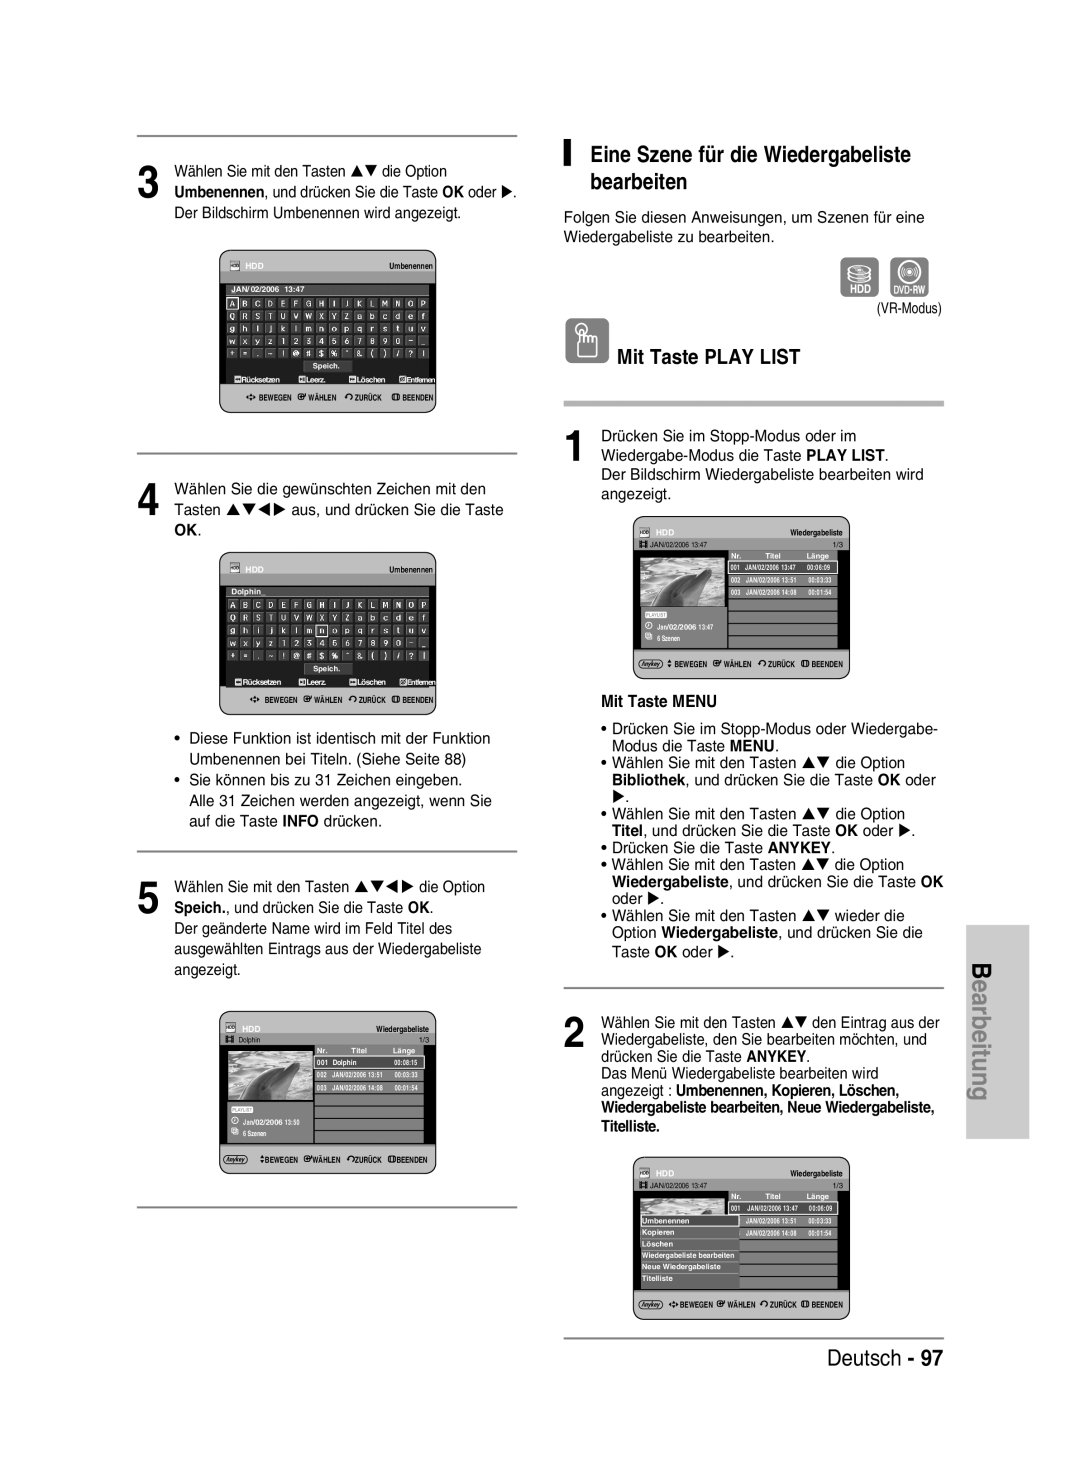 Samsung DVD-HR730/XEB manual Eine Szene für die Wiedergabeliste bearbeiten, Deutsch, Mit Taste PLAY LIST, Mit Taste MENU 